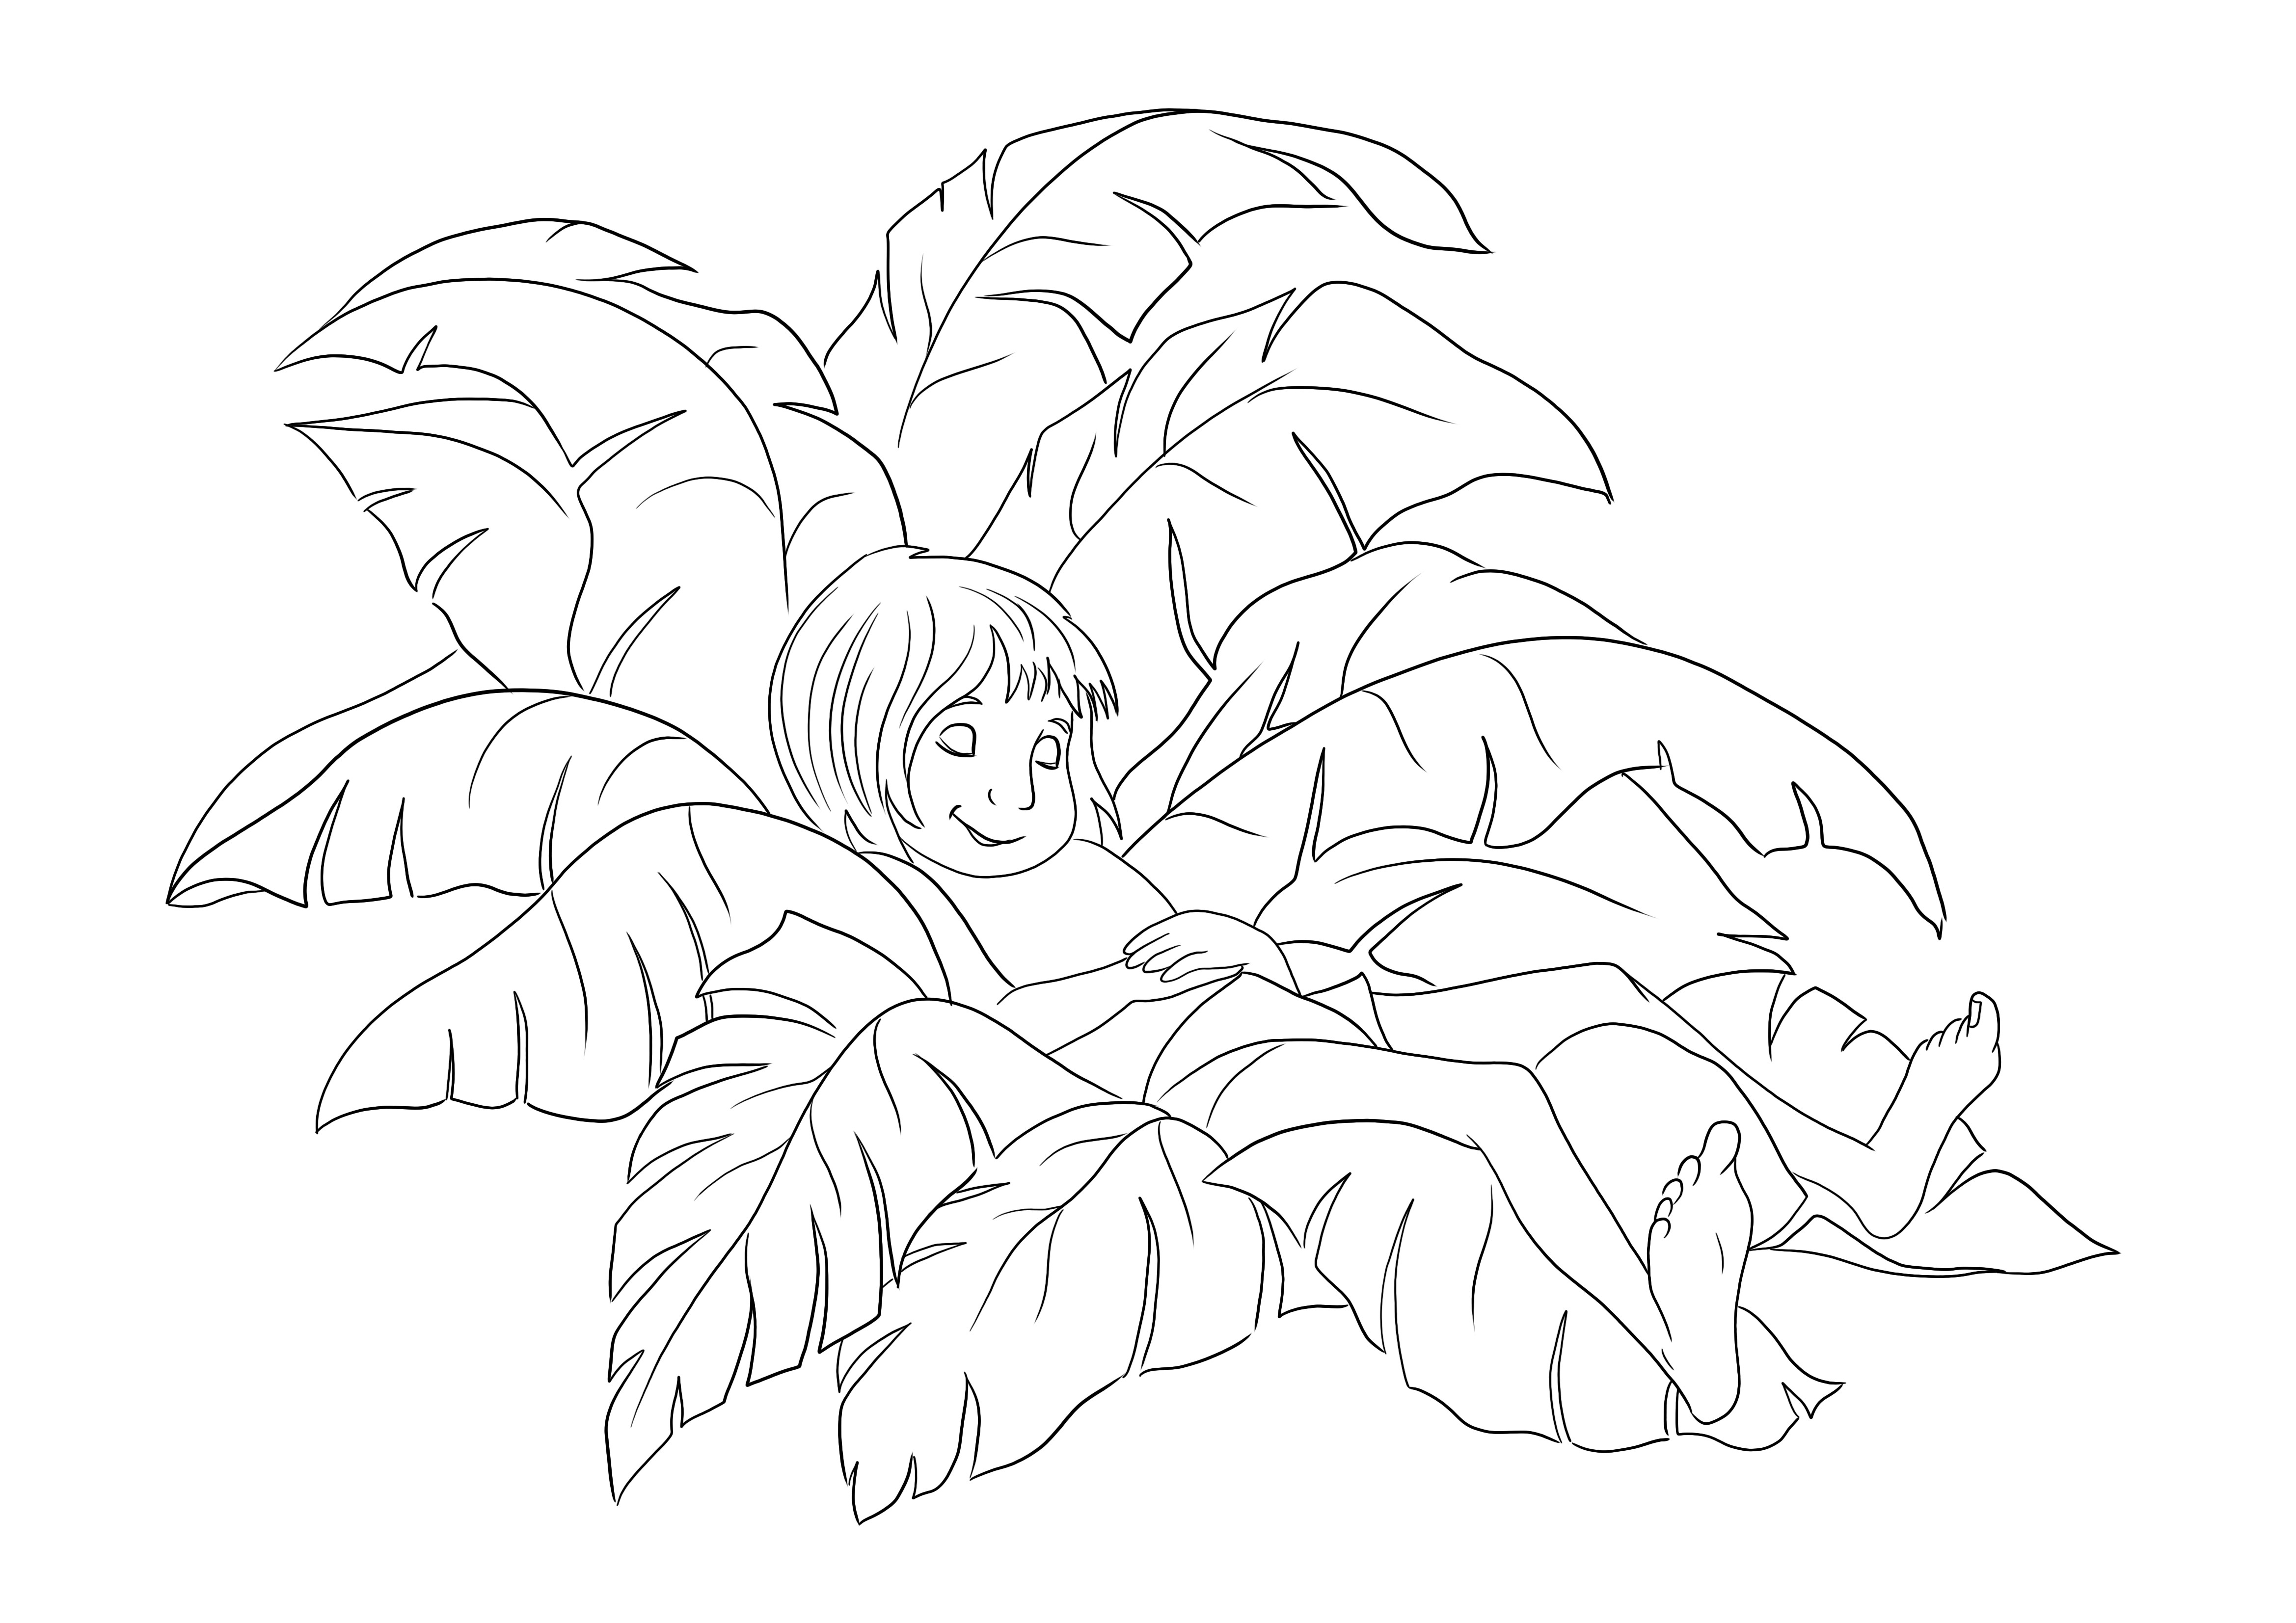 Ücretsiz kullanım için palmiye yapraklarında uyuyan Mowgli'nin kolay renklendirilmesi ve baskısı